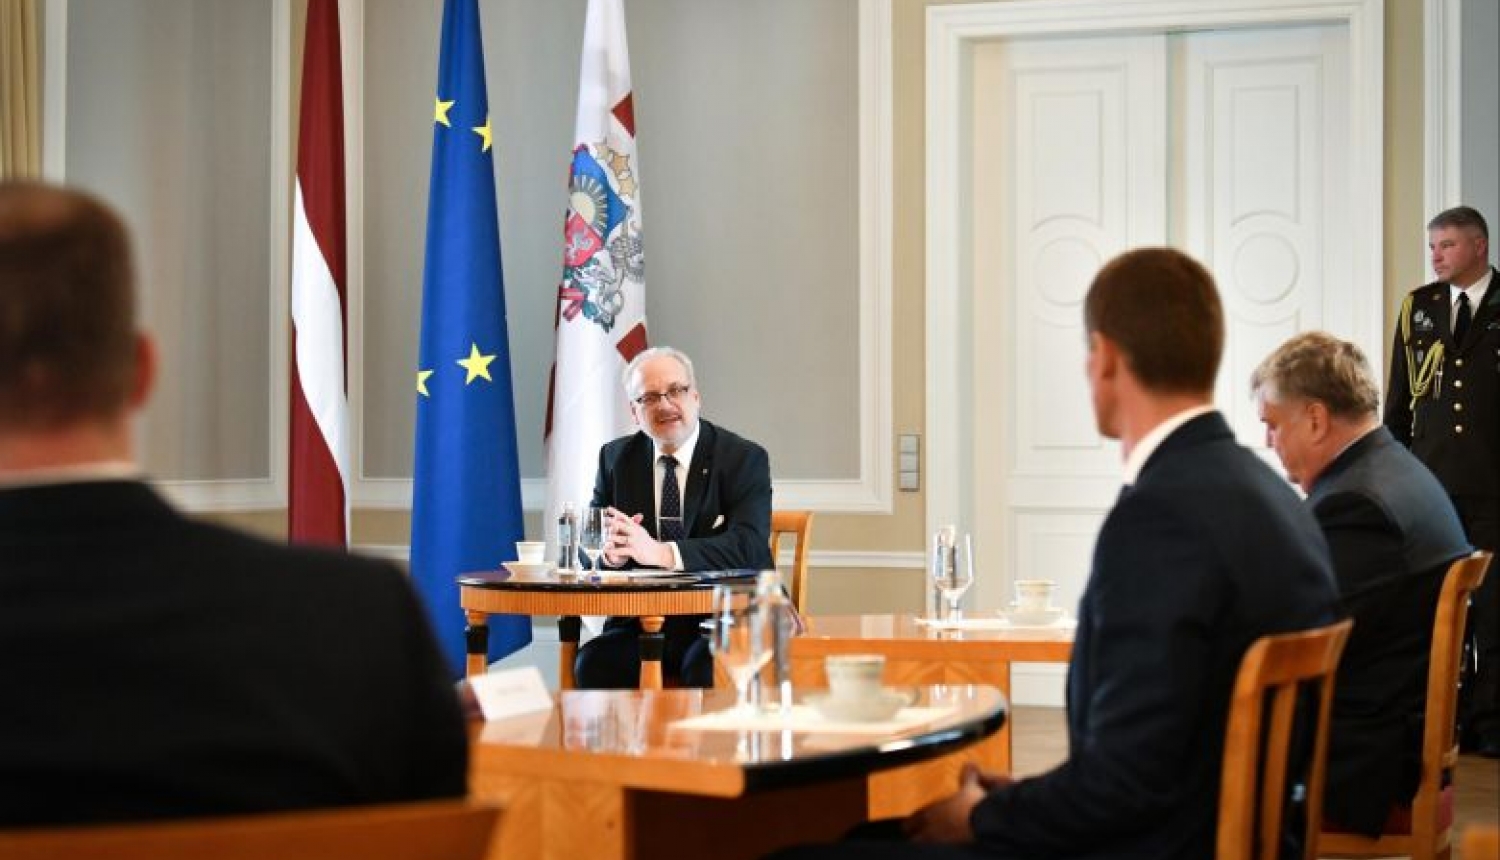 Valsts prezidents: Saeimai jāturpina aizsāktās diskusijas par valdības ātrās reaģēšanas mehānismu Satversmē krīzes situācijās